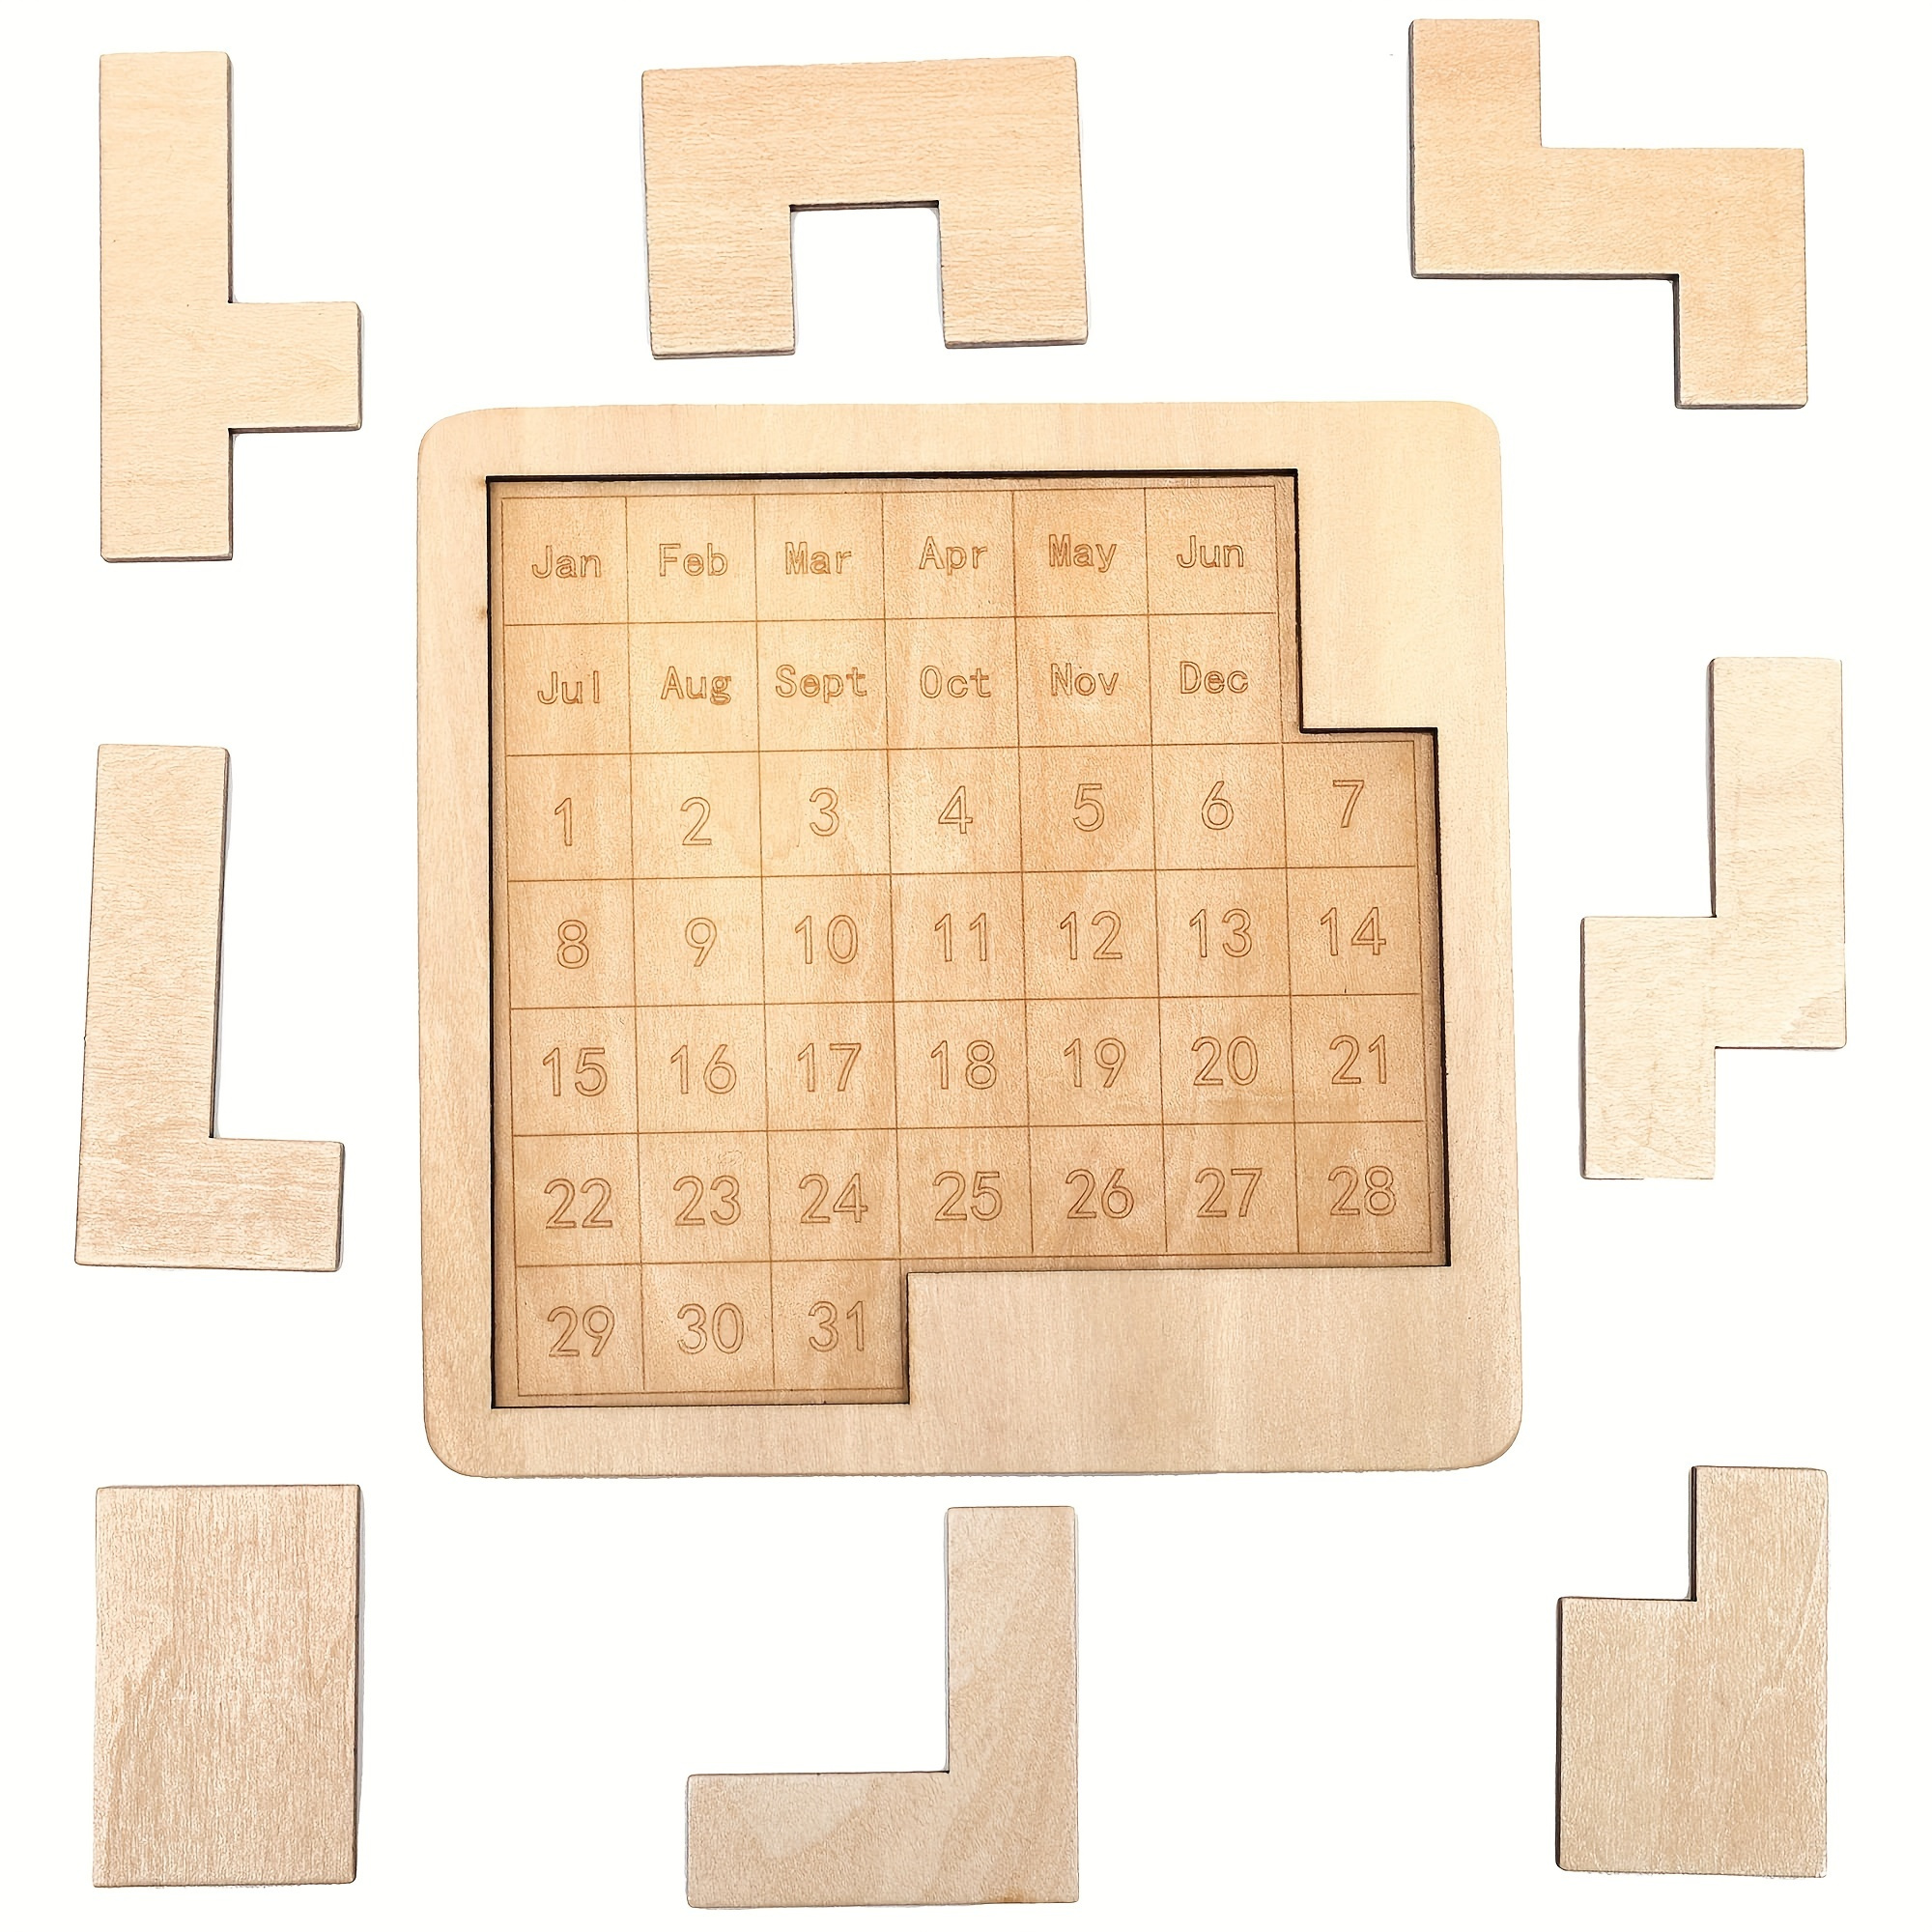 Smart Puzzle Glue Sheets  Feuilles de colle pour casse-tête